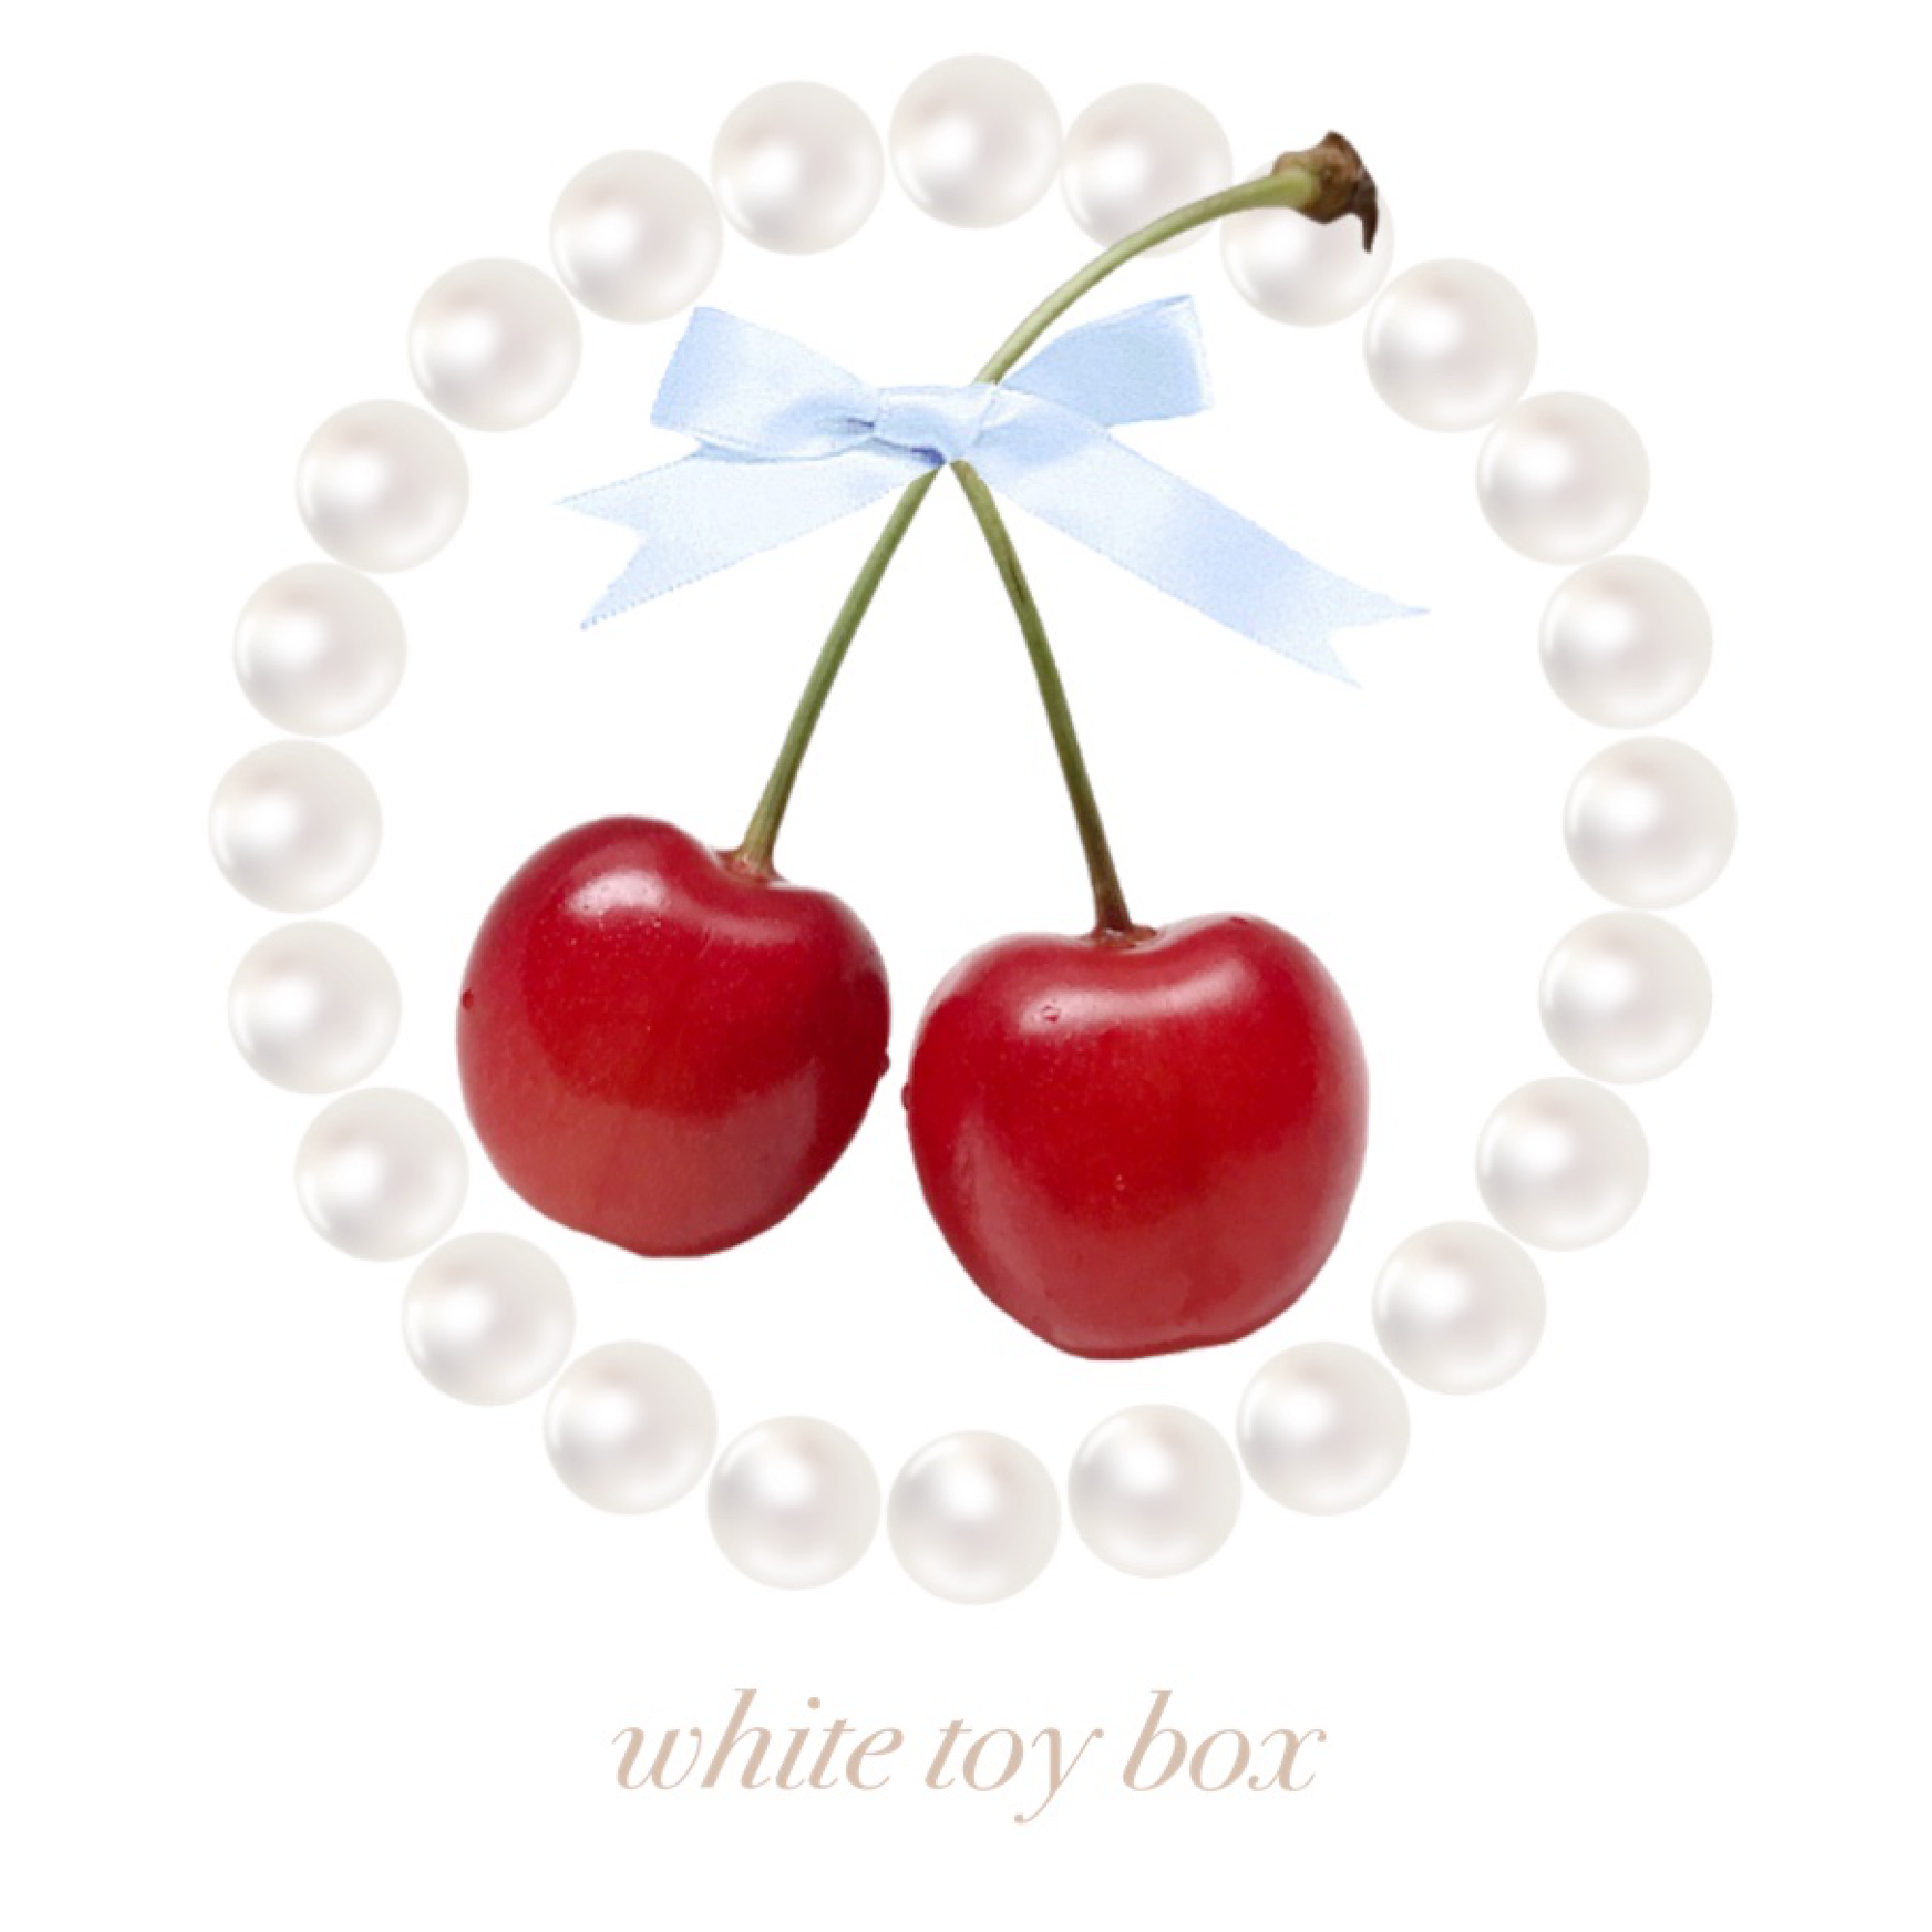 white toy box